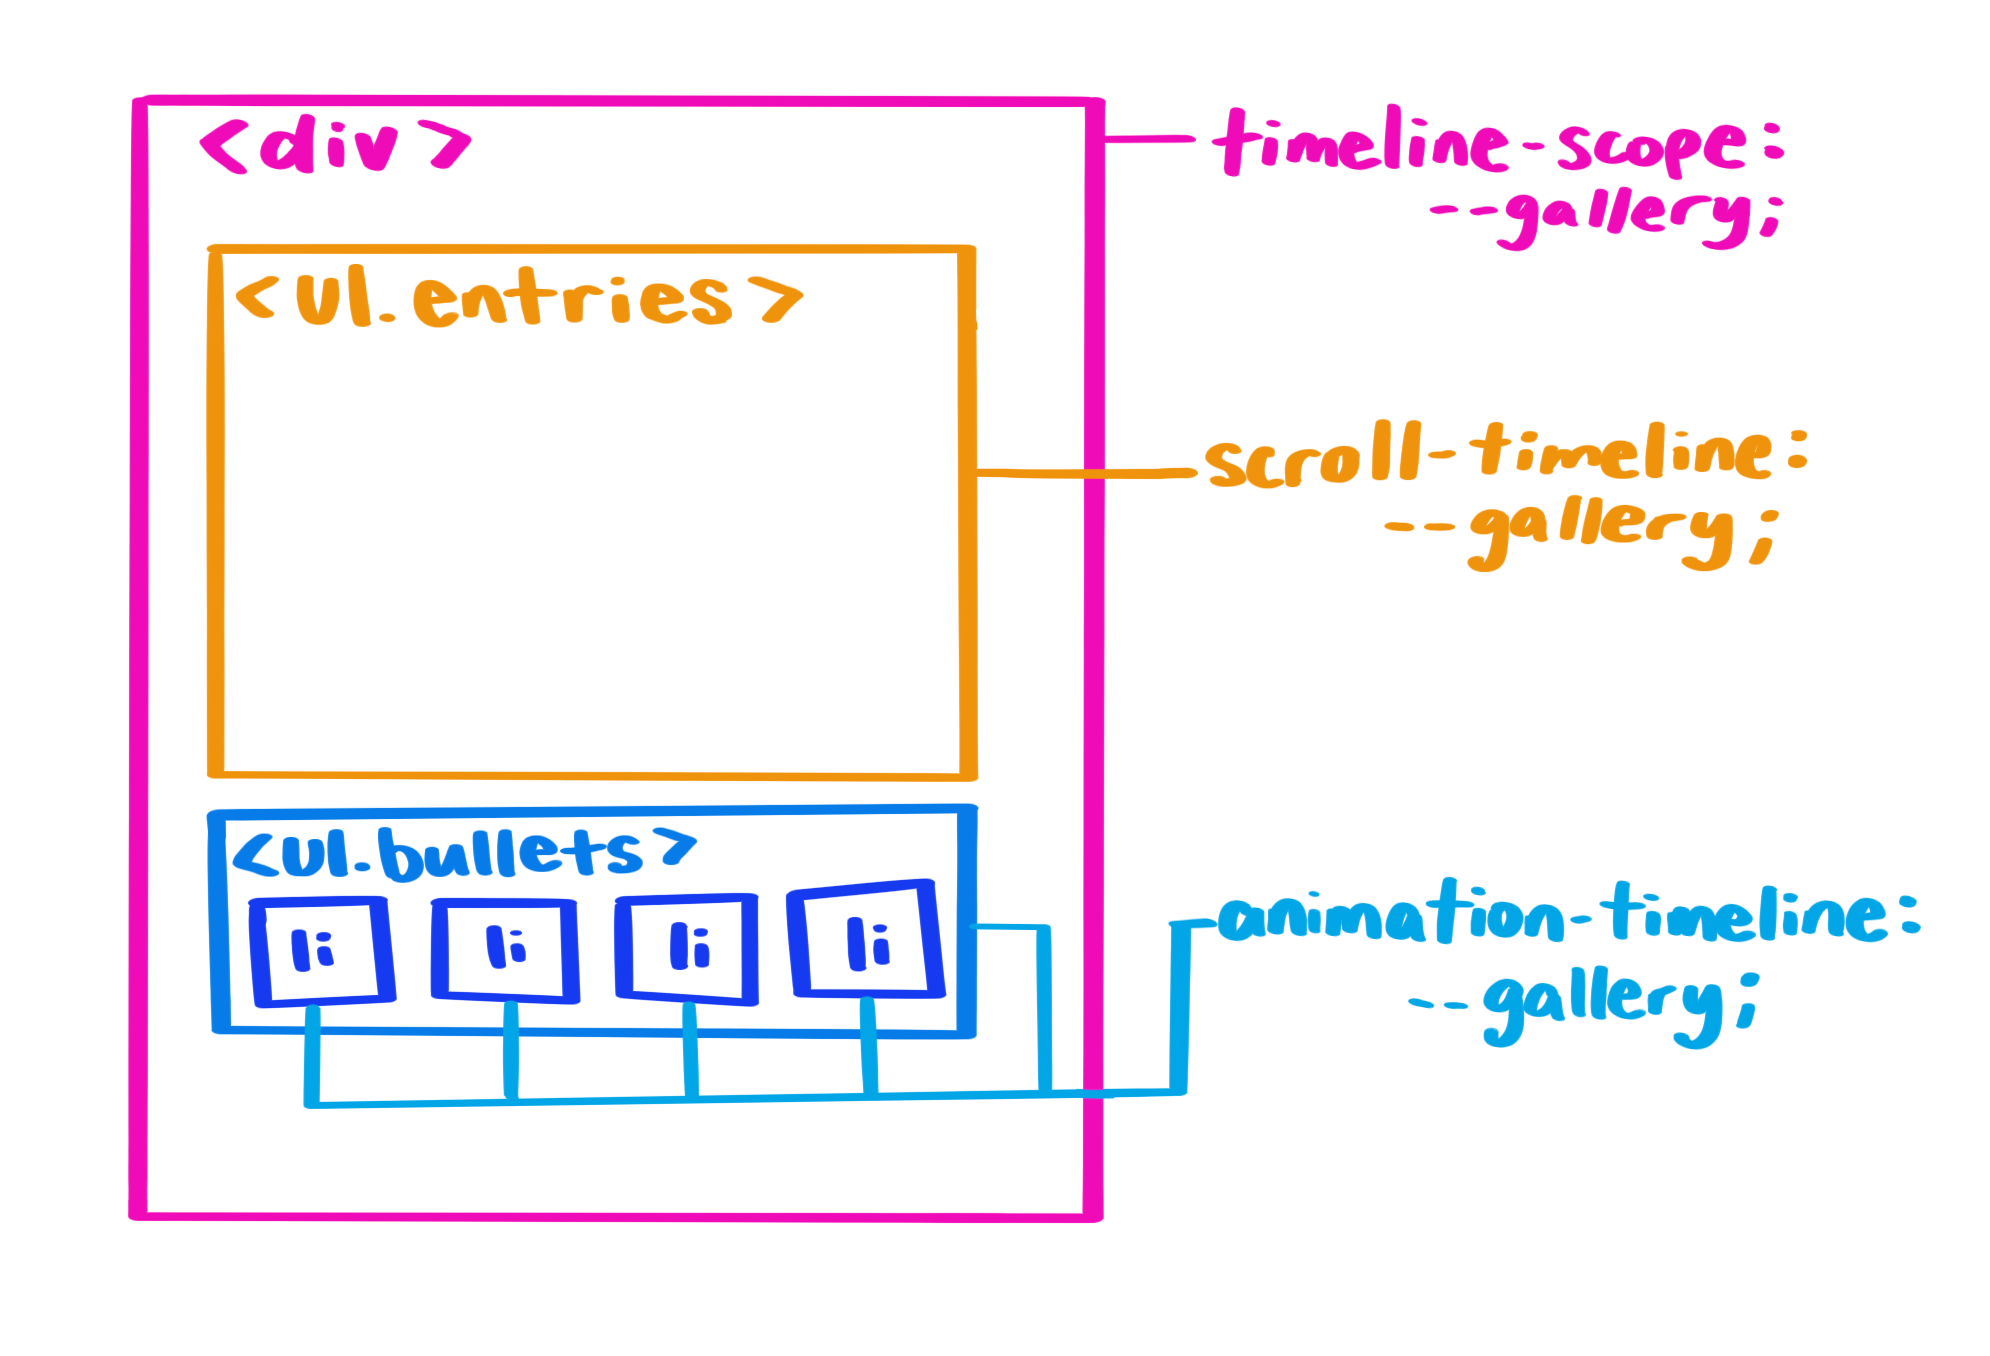 تمثيل بصري لشجرة فرعية في نموذج العناصر في المستند (DOM) مع نطاق زمني مُستخدَم في عنصر رئيسي مشترك